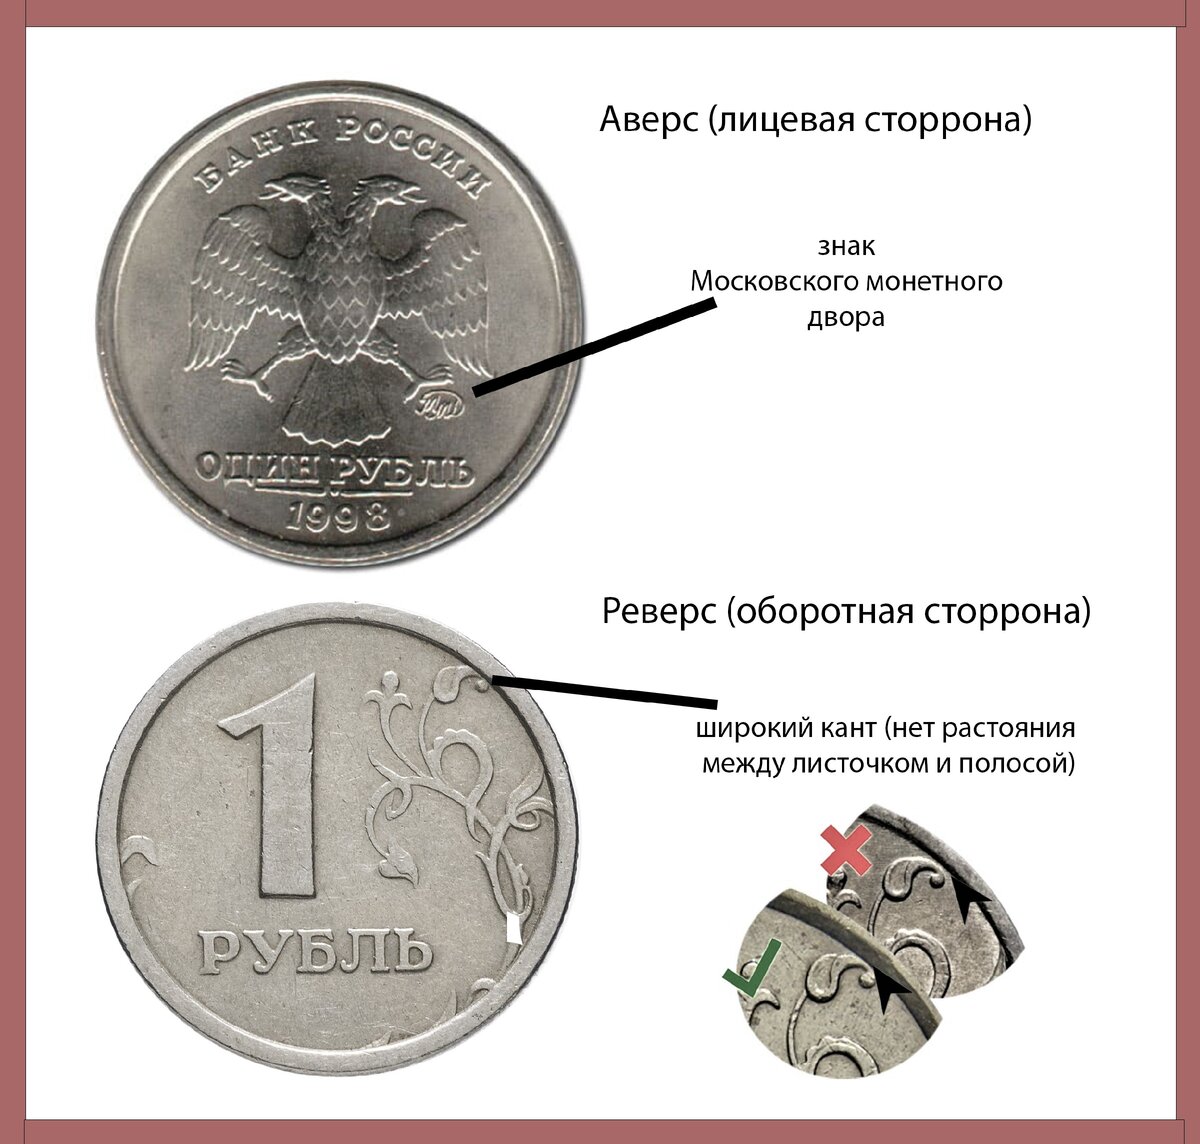 5 рублей имеющие ценность. Рубль ценные монеты 1998. Ценные монеты 1 рубль 1998. Редкие монеты 1 рубль. Дорогие 1 рублевые монеты.